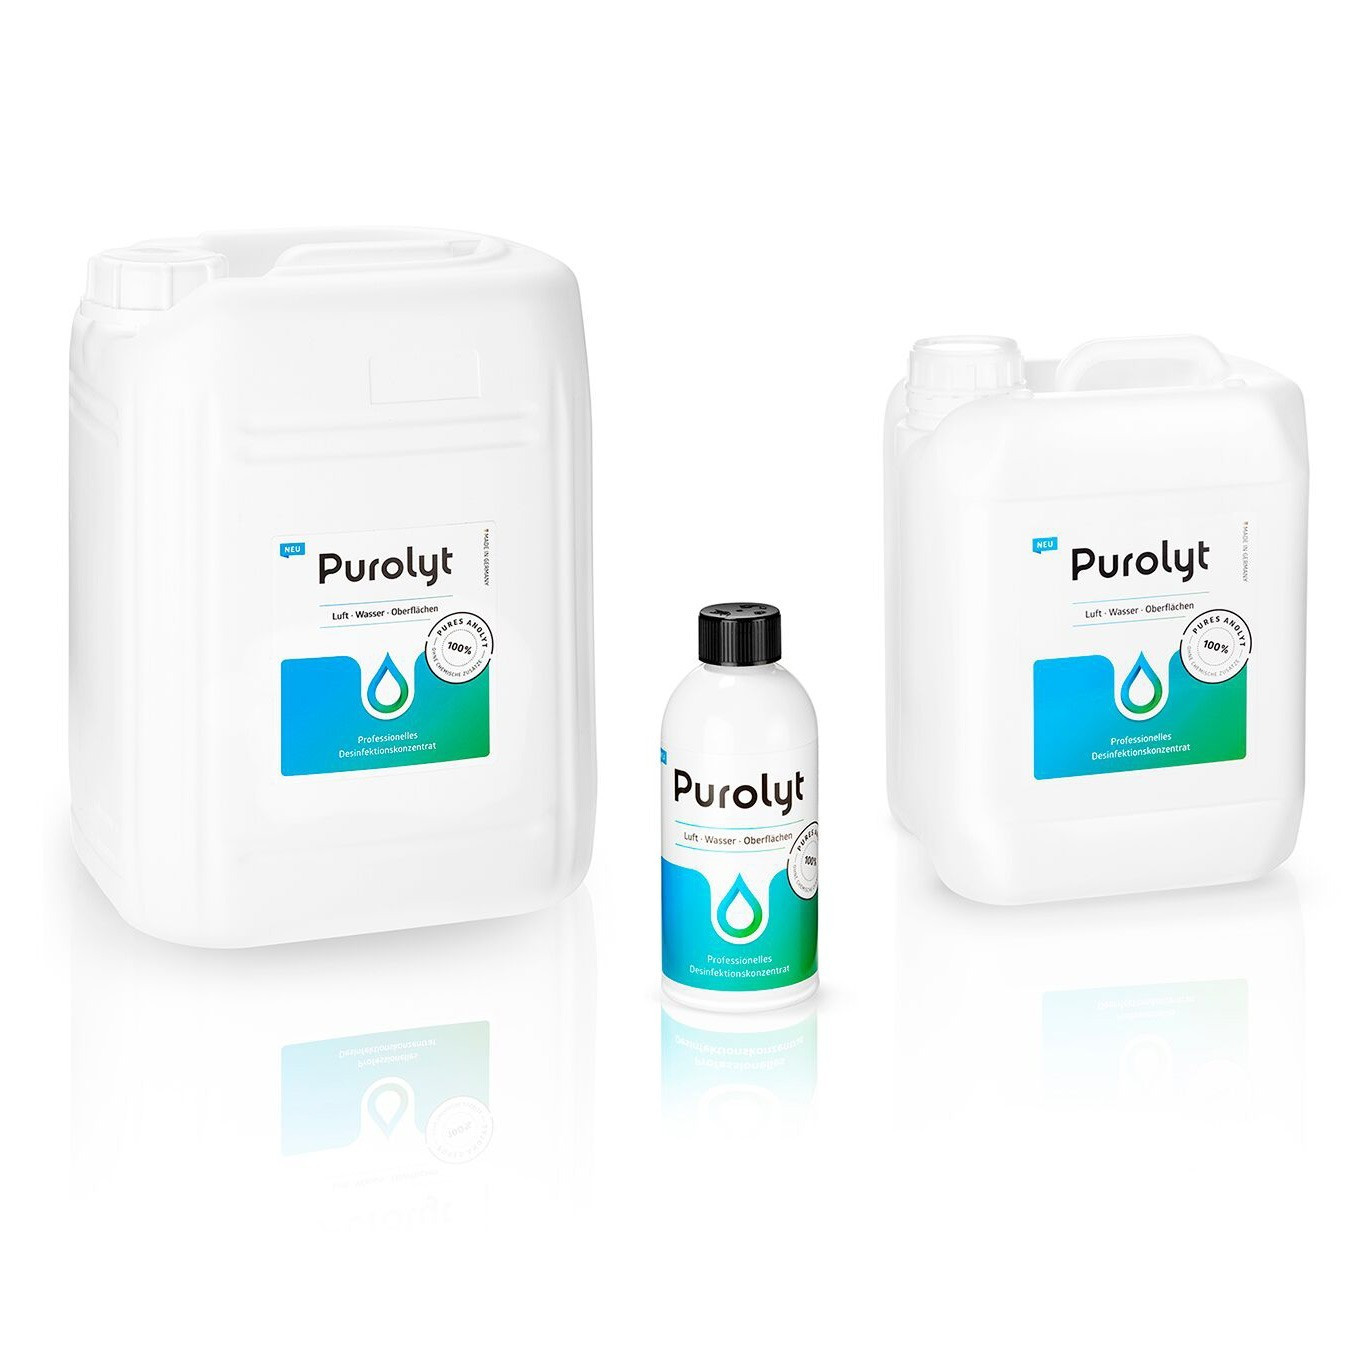 Purolyt - Professional Liquid Disinfectant - 500mL